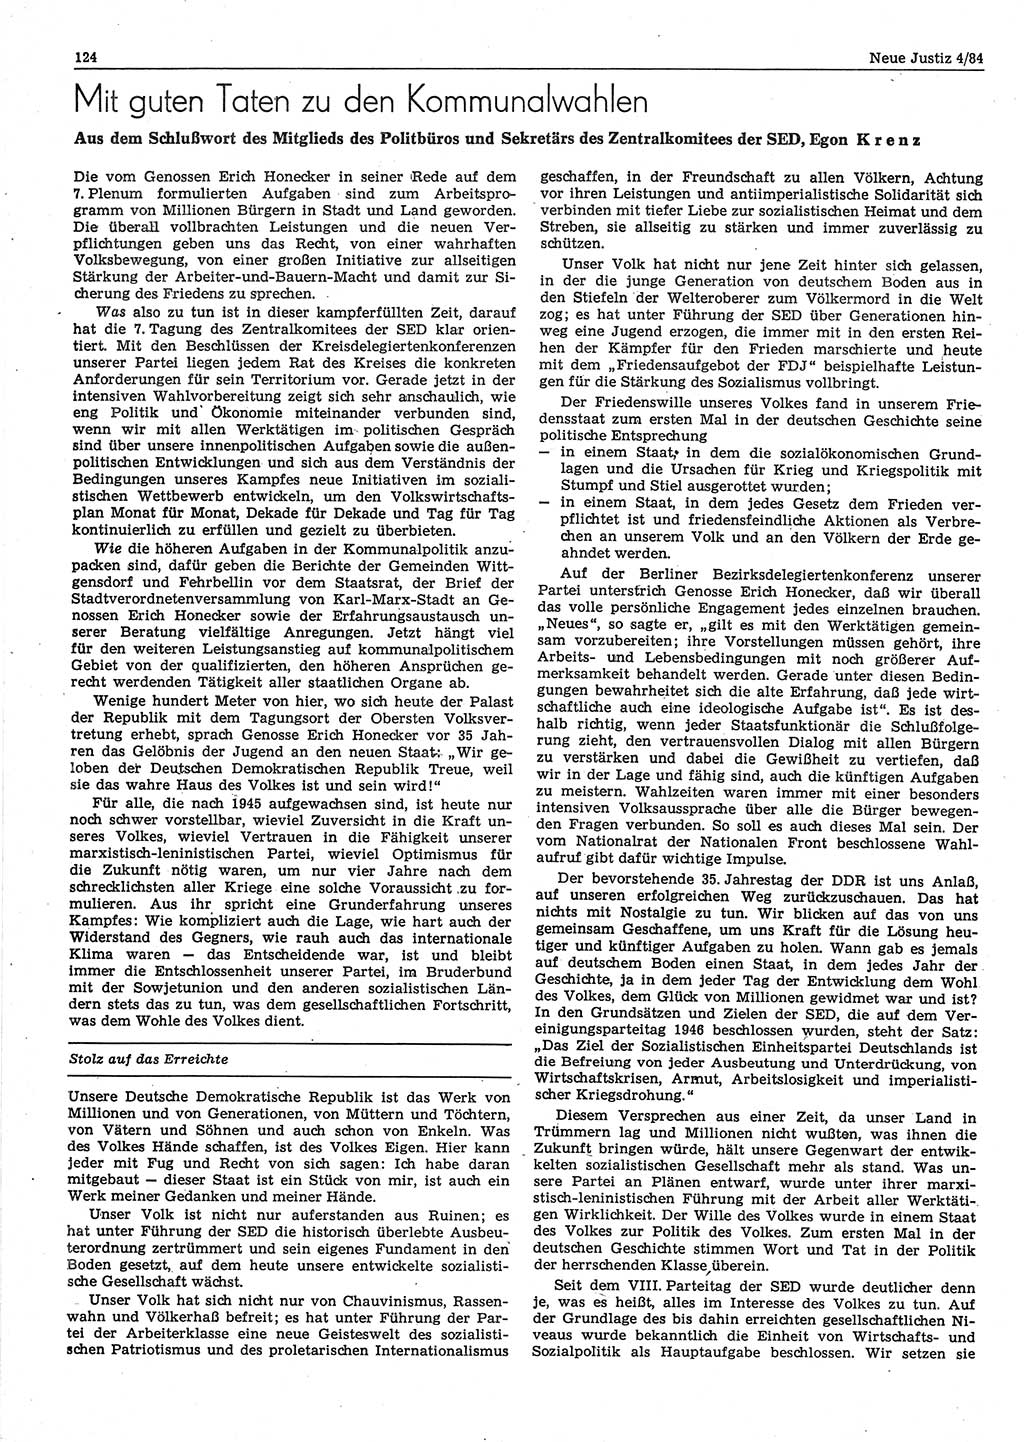 Neue Justiz (NJ), Zeitschrift für sozialistisches Recht und Gesetzlichkeit [Deutsche Demokratische Republik (DDR)], 38. Jahrgang 1984, Seite 124 (NJ DDR 1984, S. 124)